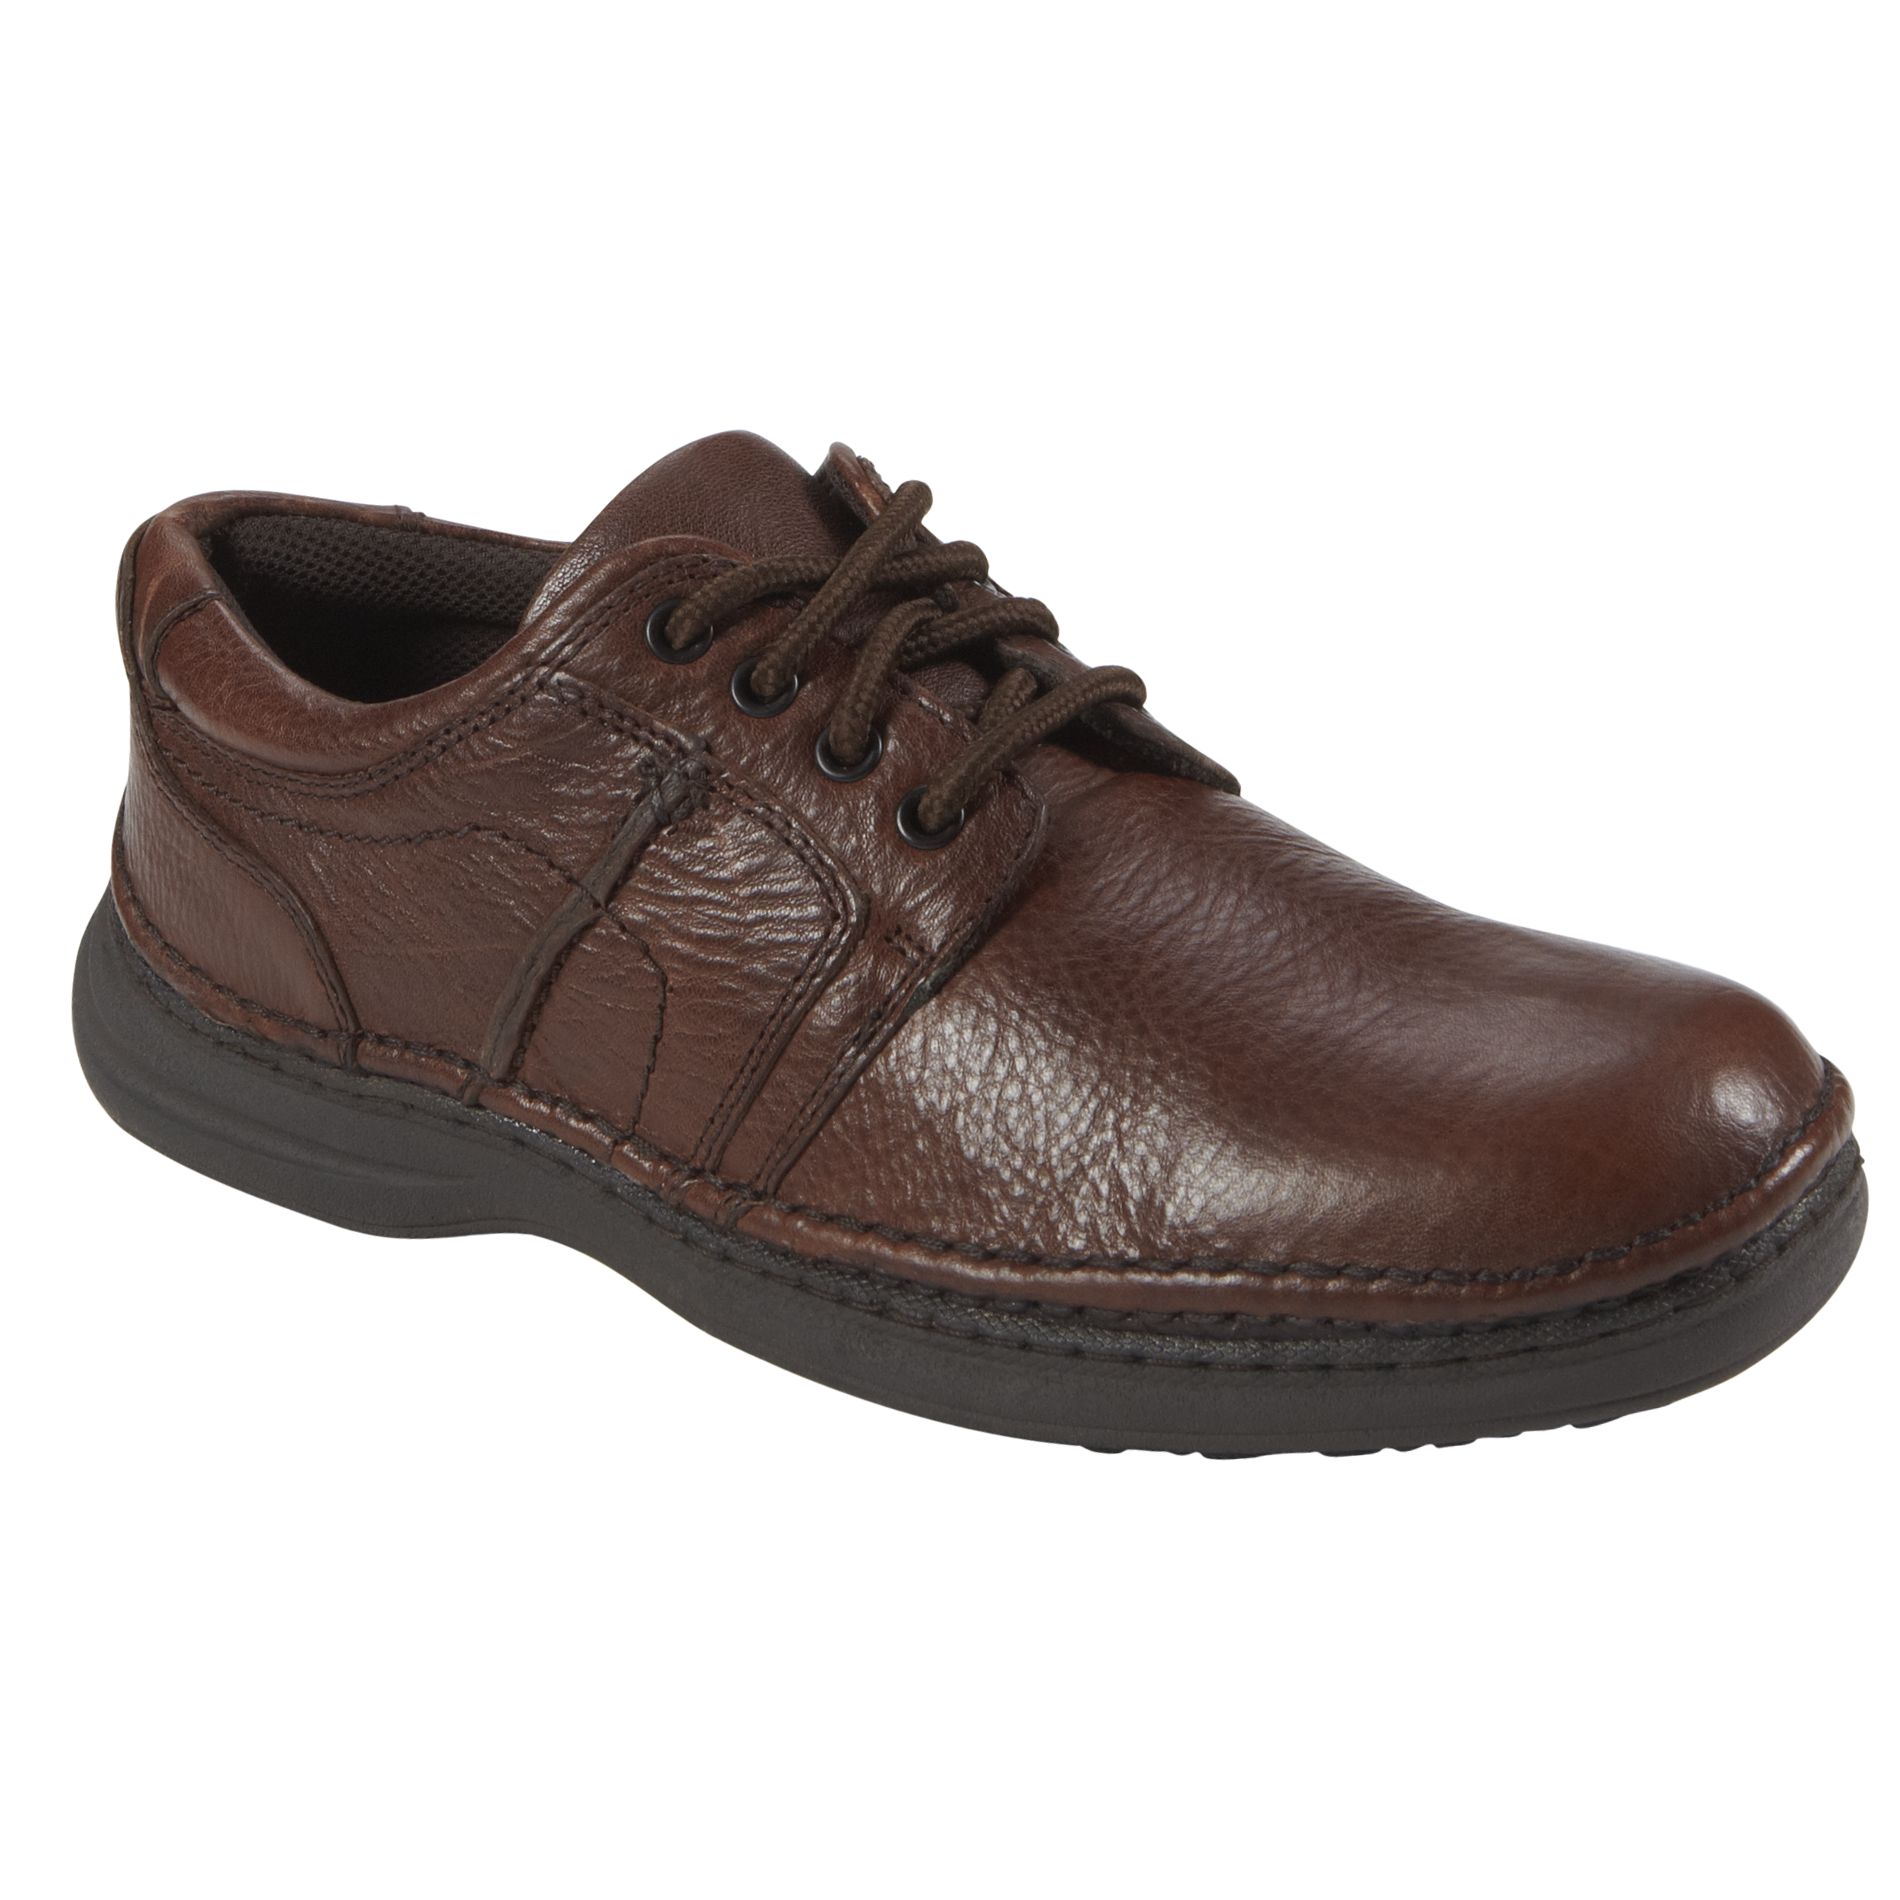 Nunn Bush Men's Vince Leather Casual Shoe - Wide Avail - Brown